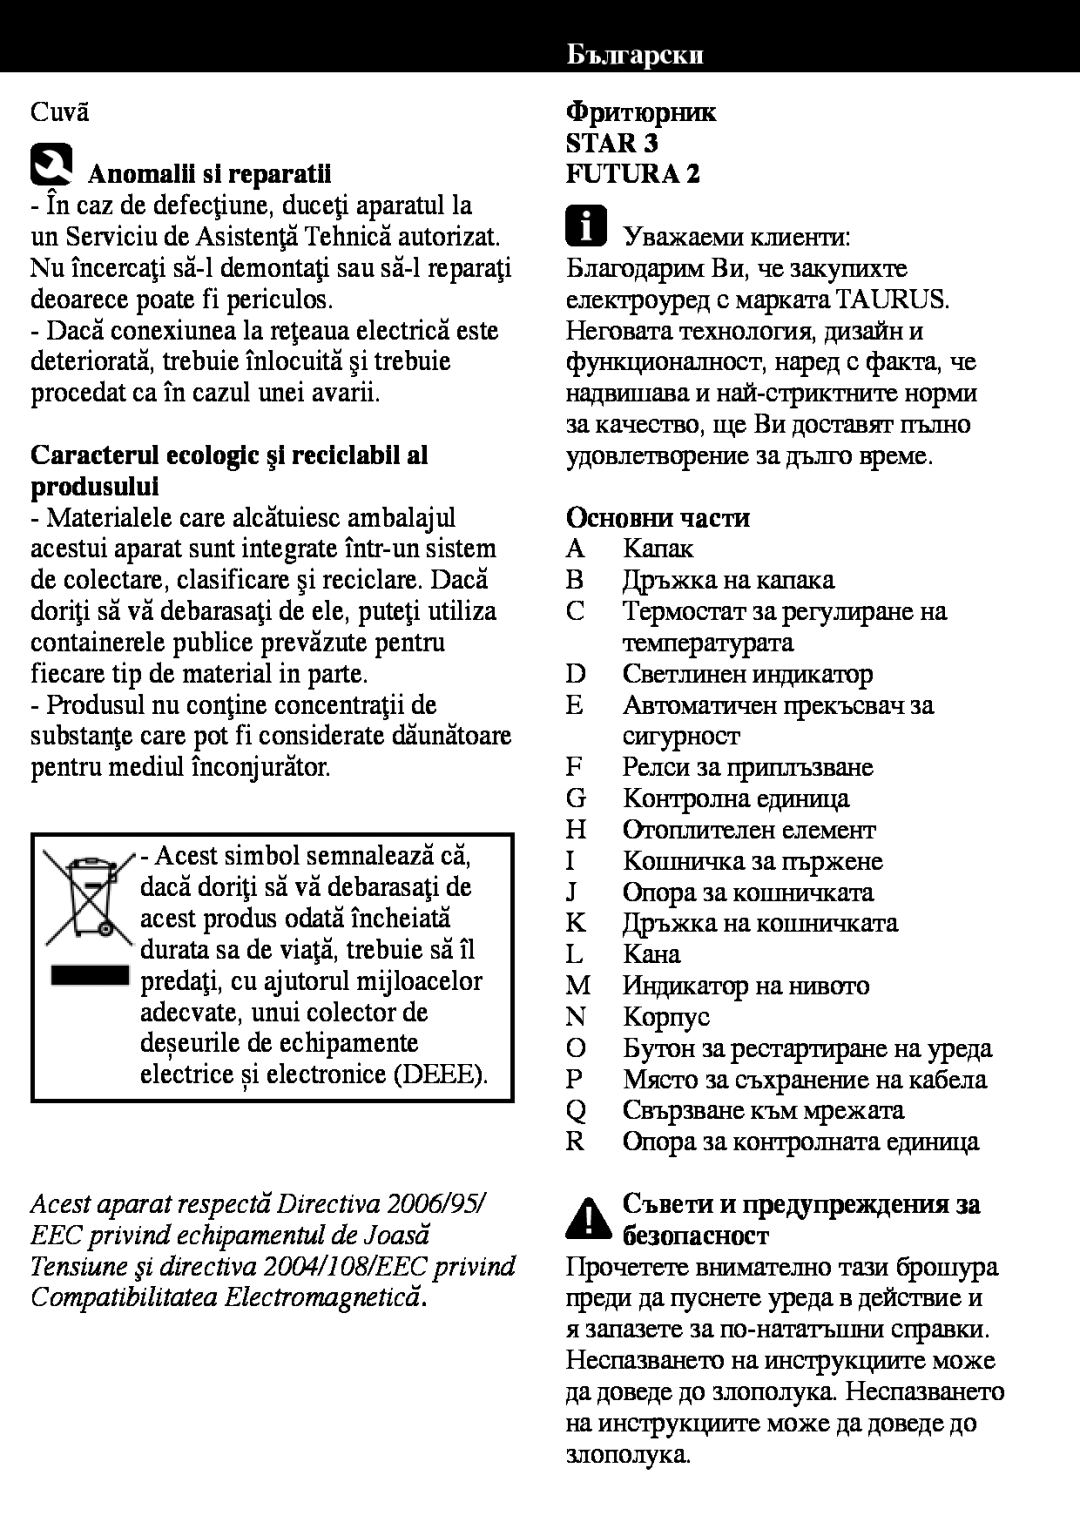 Taurus Group Star 3 manual Anomalii si reparatii, Caracterul ecologic şi reciclabil al produsului, Български 